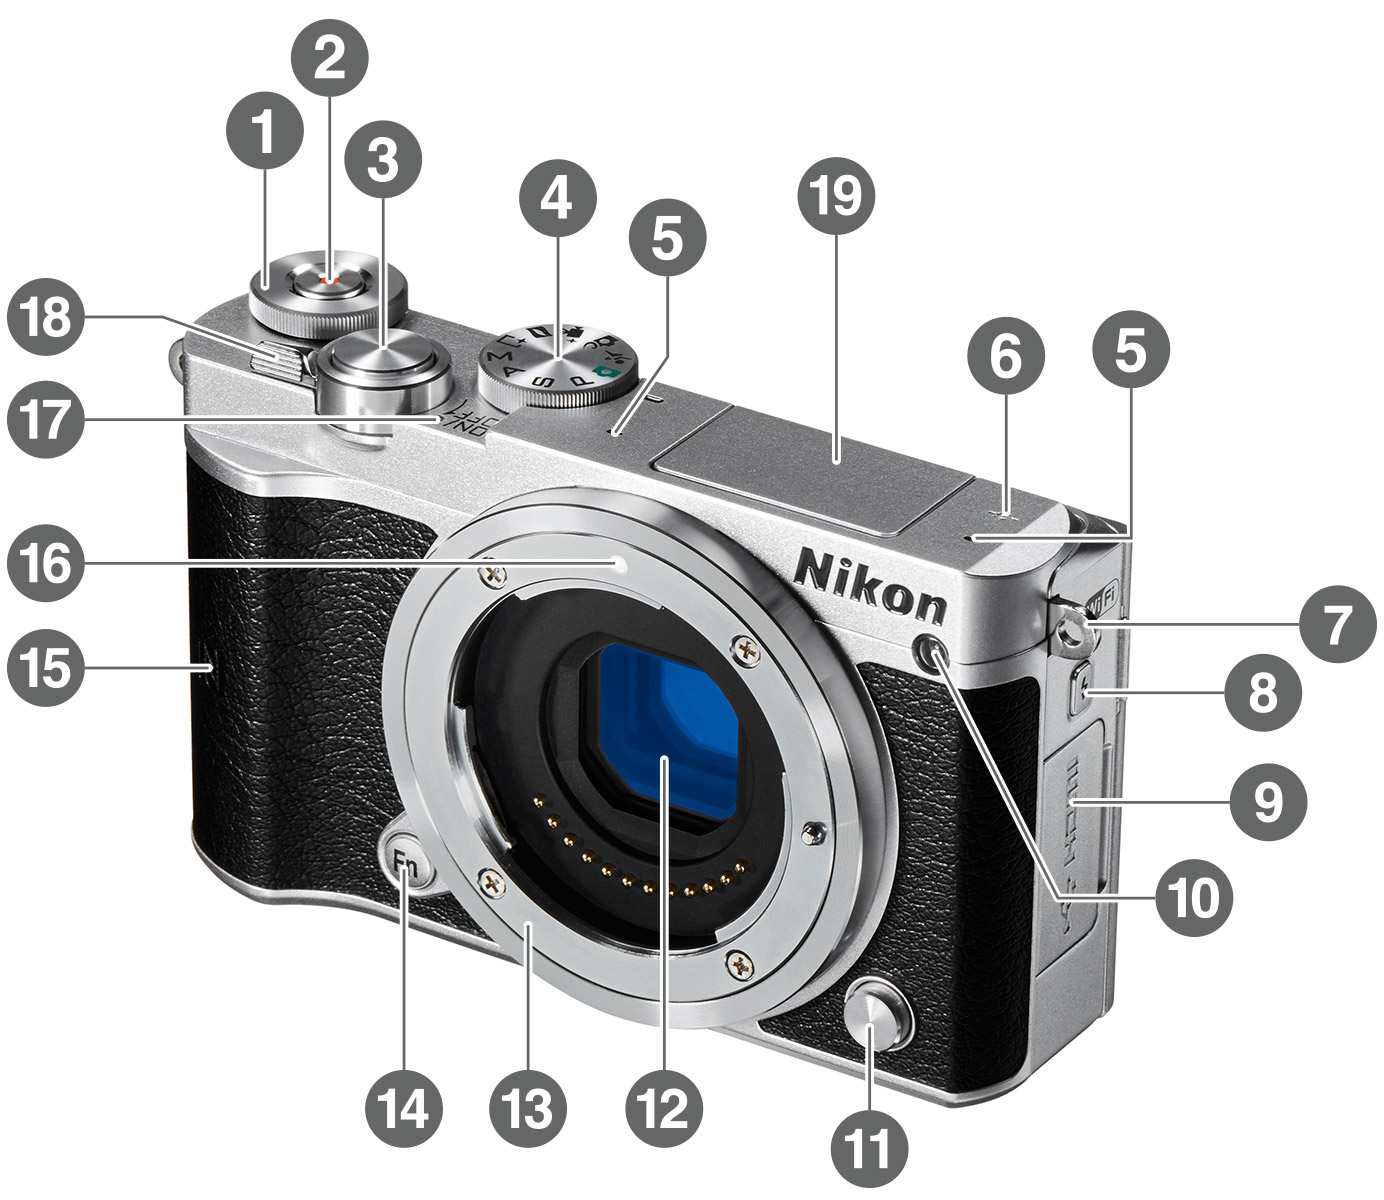 Nikon NIKON 1 J5 ミラーレスカメラ